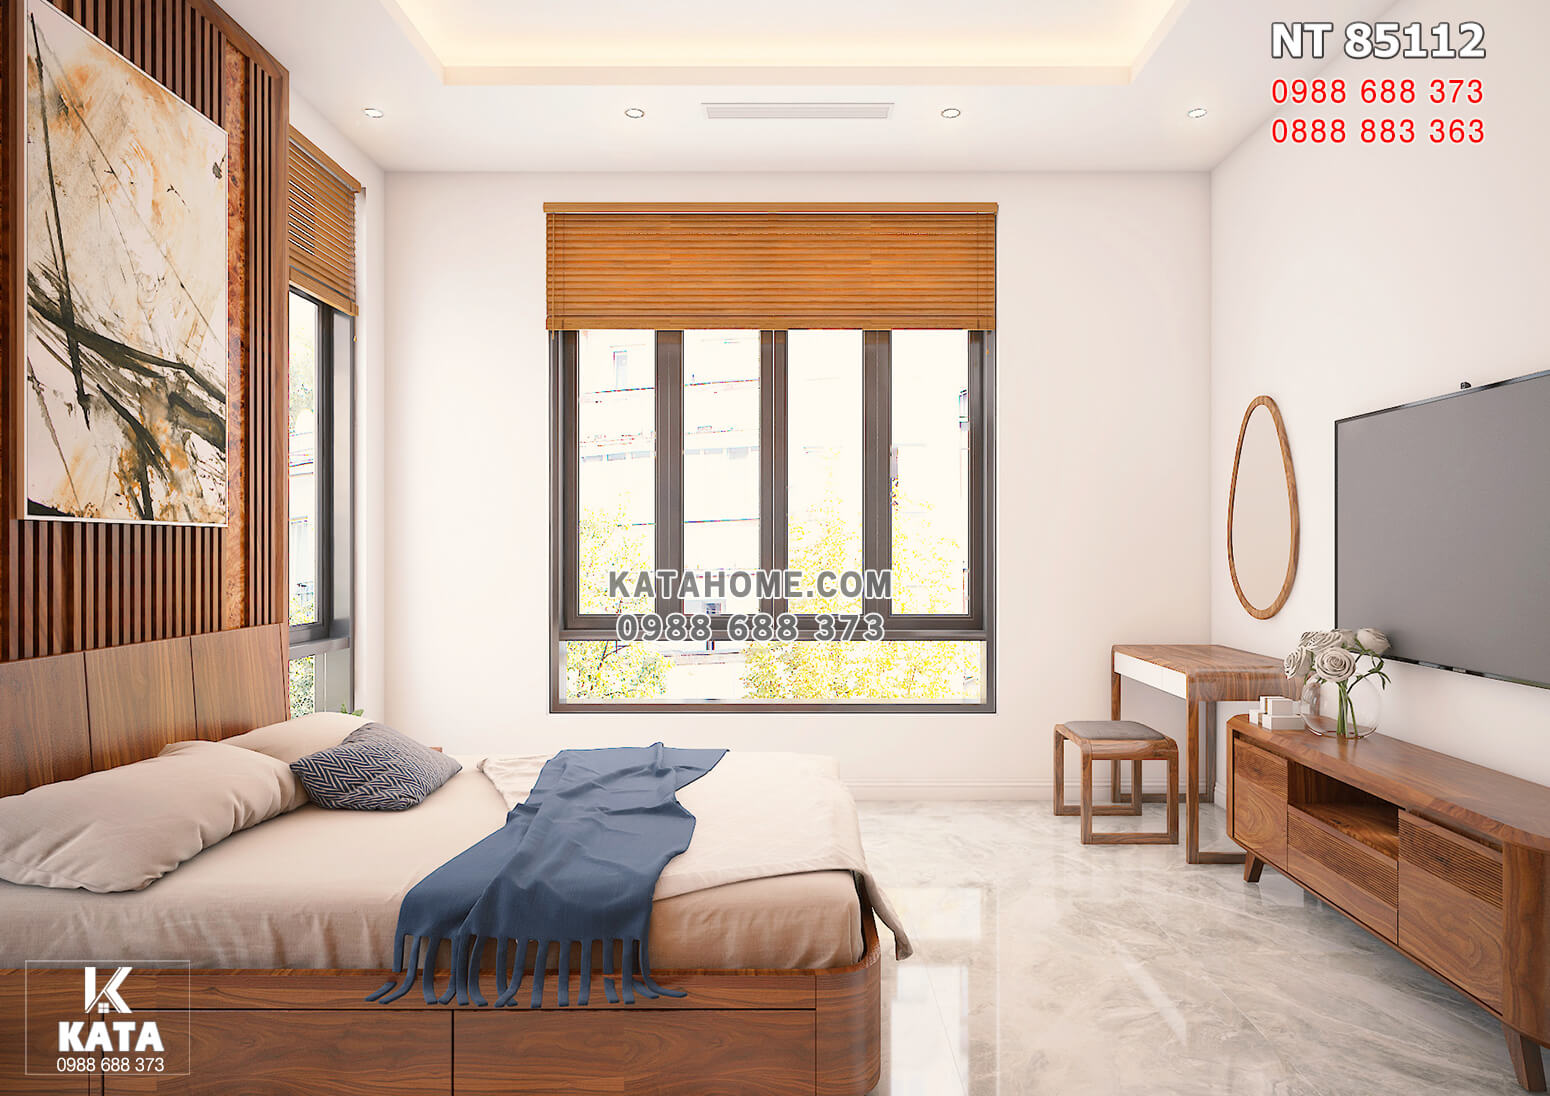 Hình ảnh: Không gian phòng ngủ ấm áp với nội thất gỗ óc chó